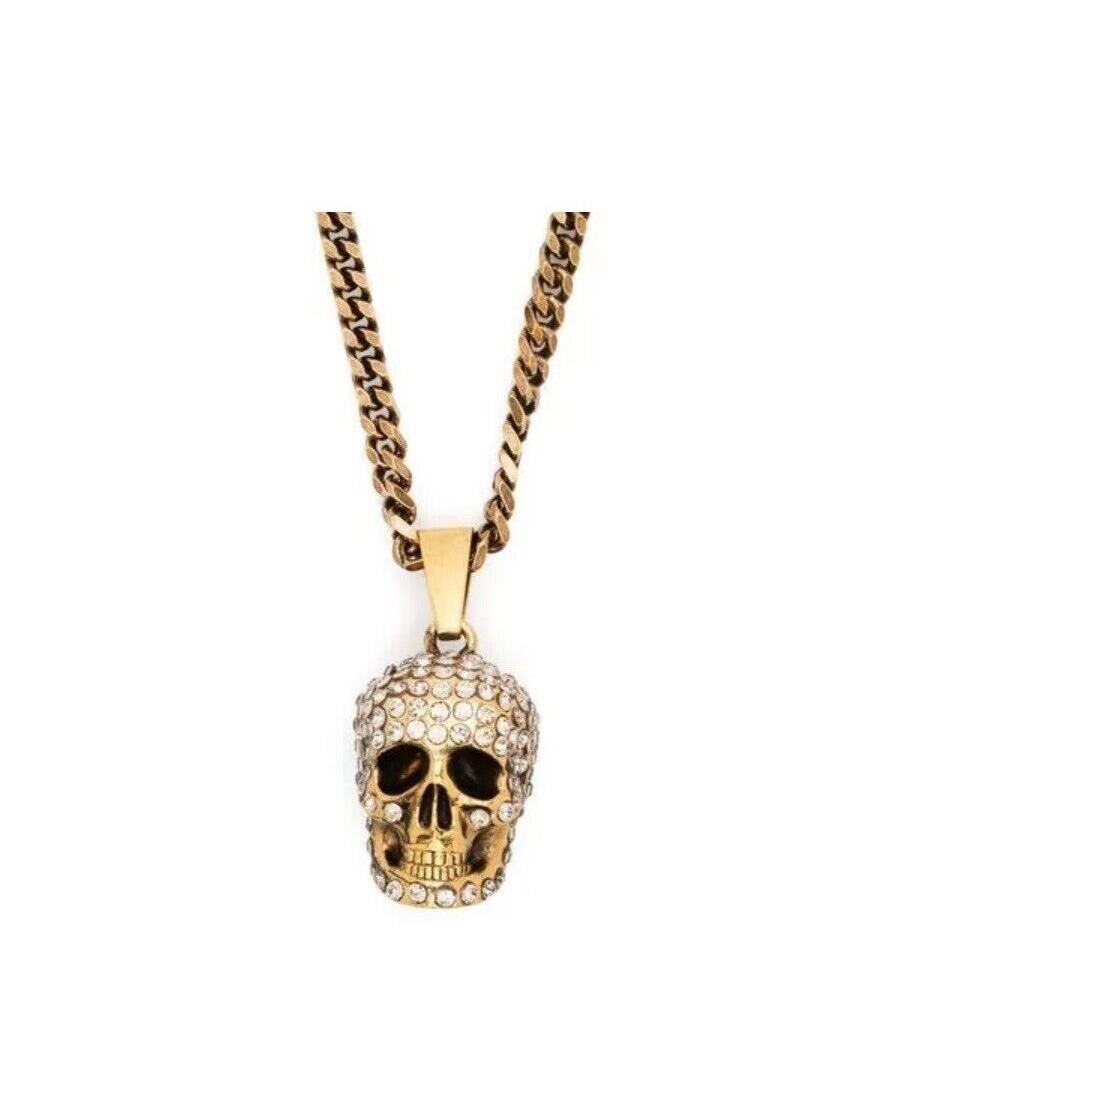 Alexander Mcqueen Gold Tone Pav Skull Necklace